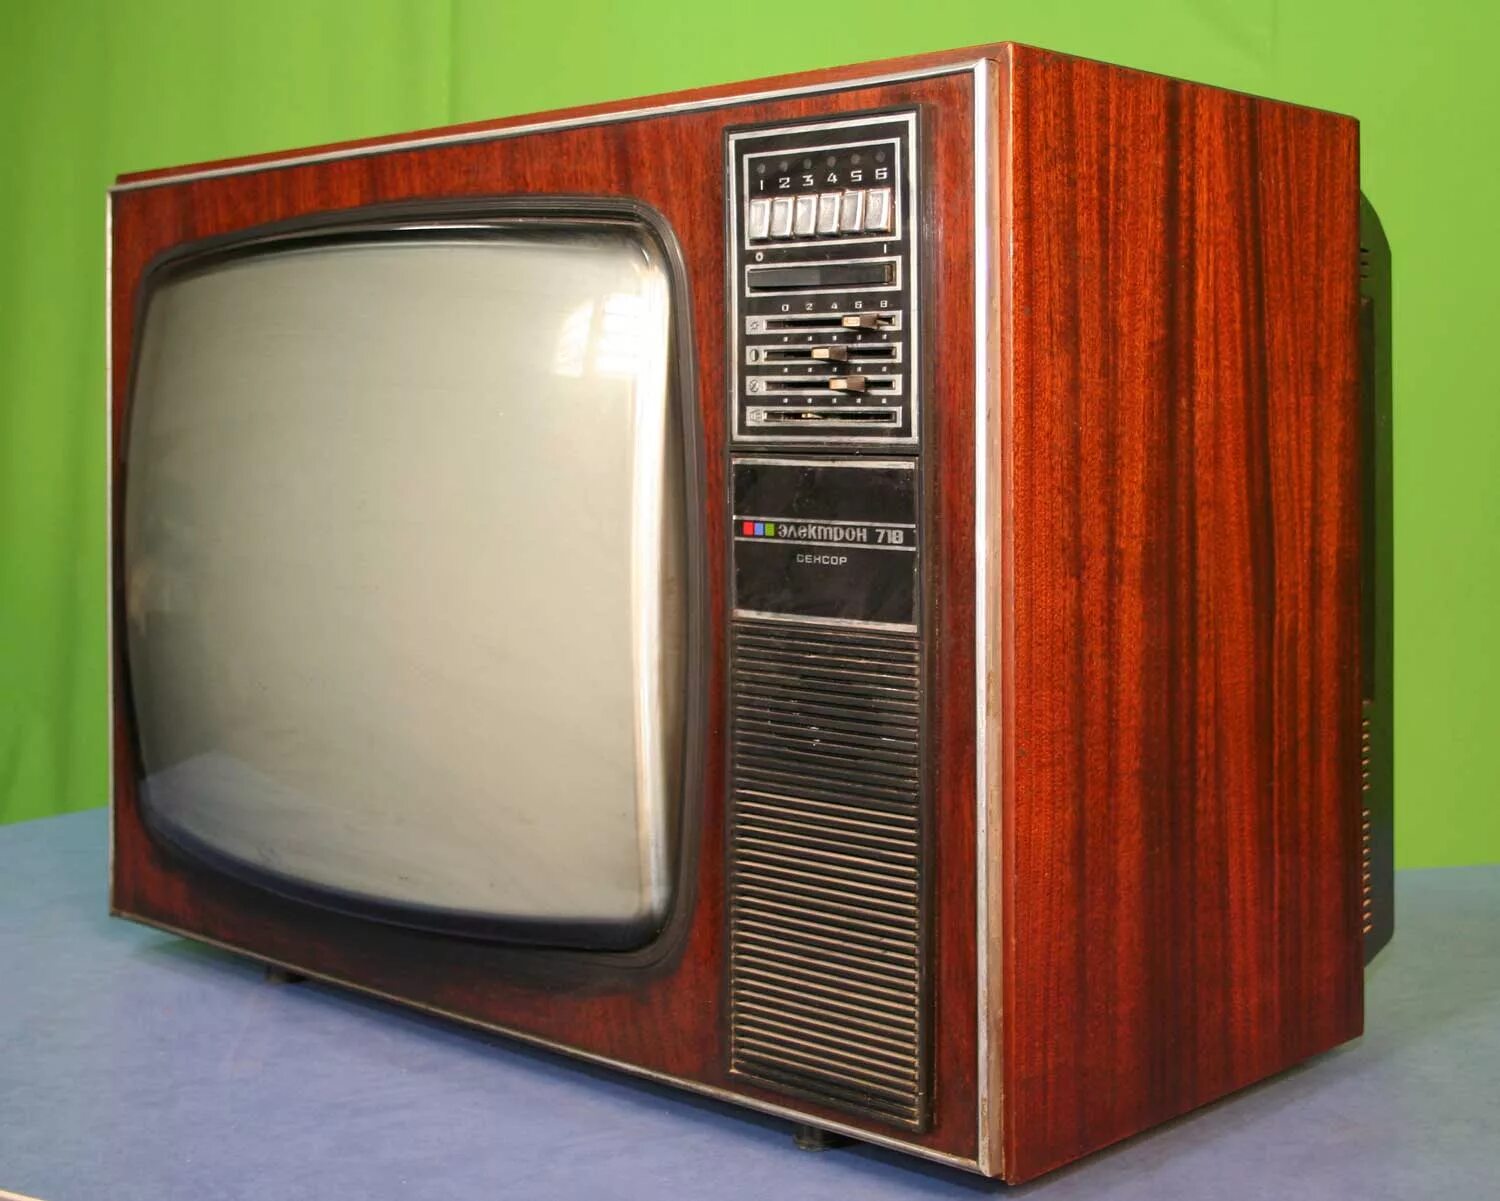 Советский цветной телевизор. Цветной телевизор электрон 718. Телевизор Рубин 718. Ламповый телевизор электрон 718. Электрон 718 телевизор СССР цветной.